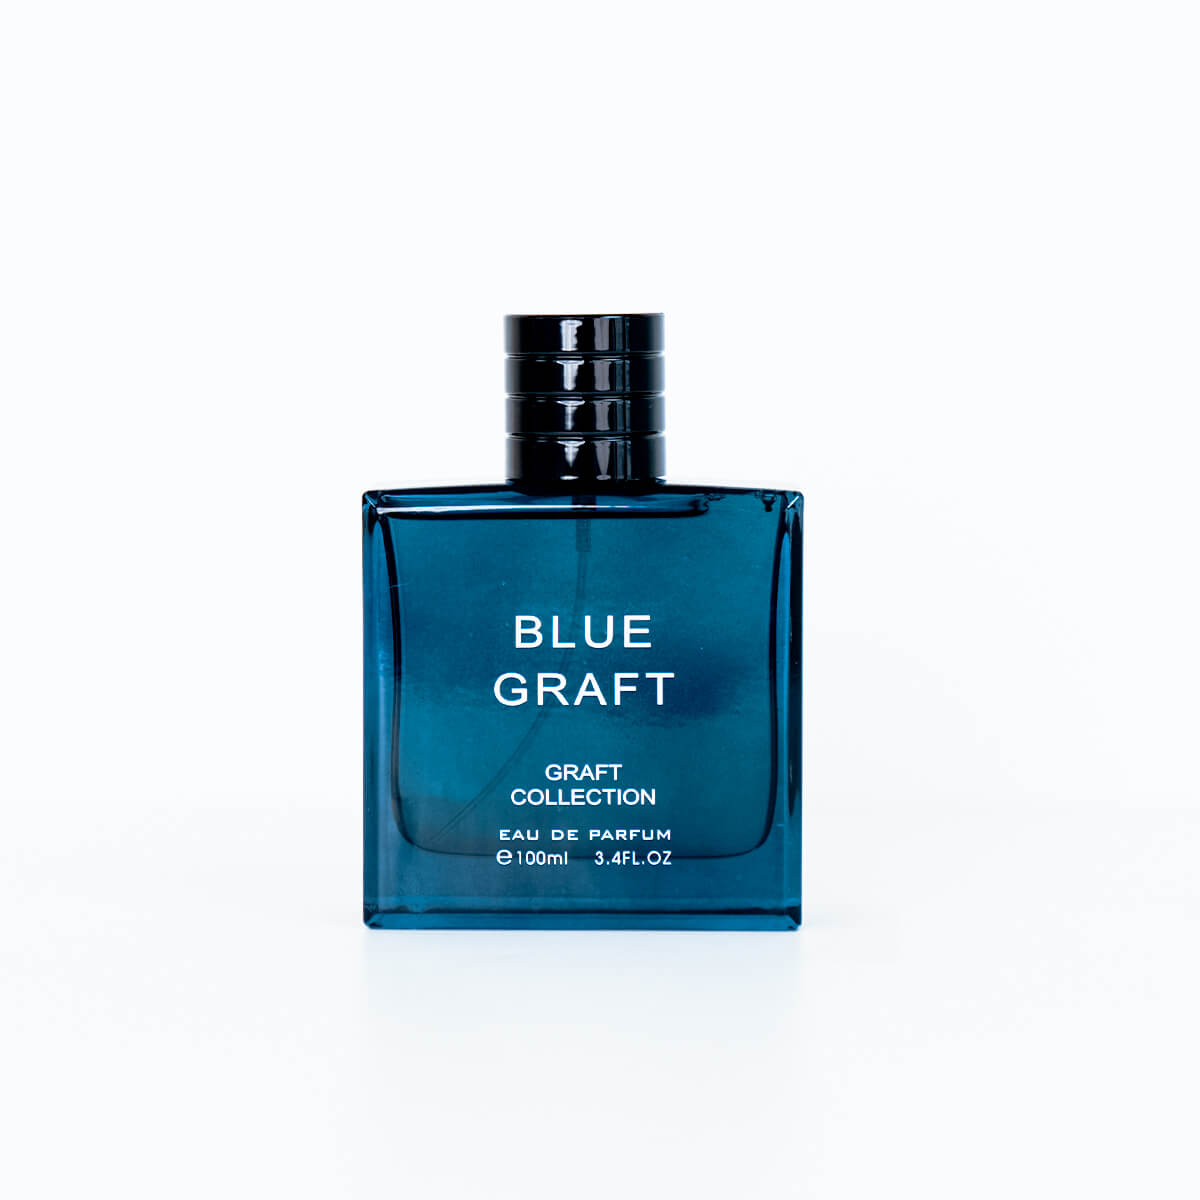 Blue Graft by Graft Collection Eau De Parfume 100ml